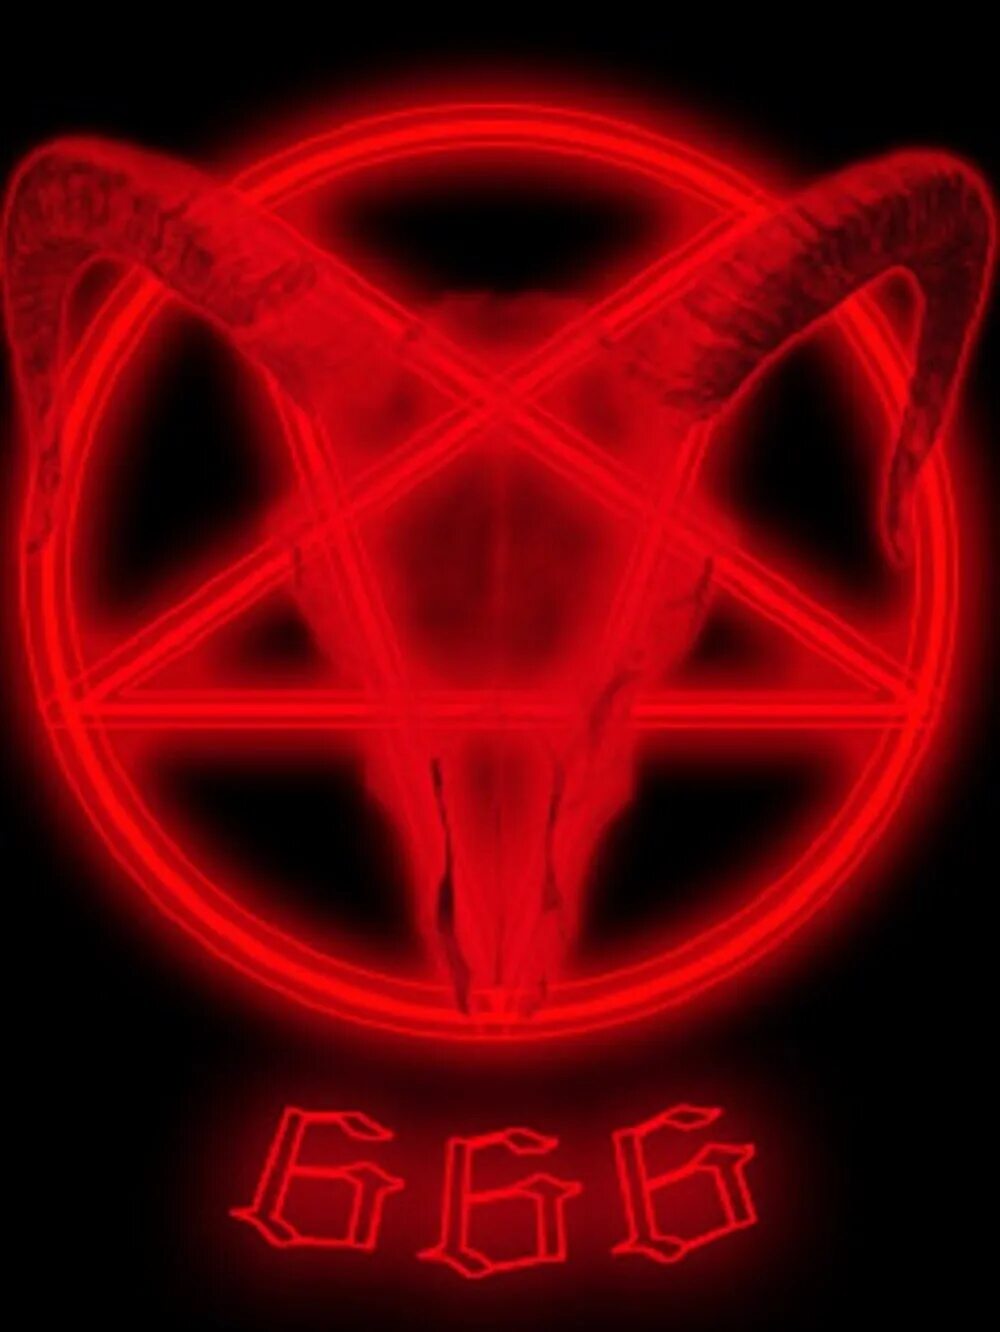 Liyawolf666. 666 Число сатанистов. Знак 666. Символ сатаны. Знак дьявола 666.